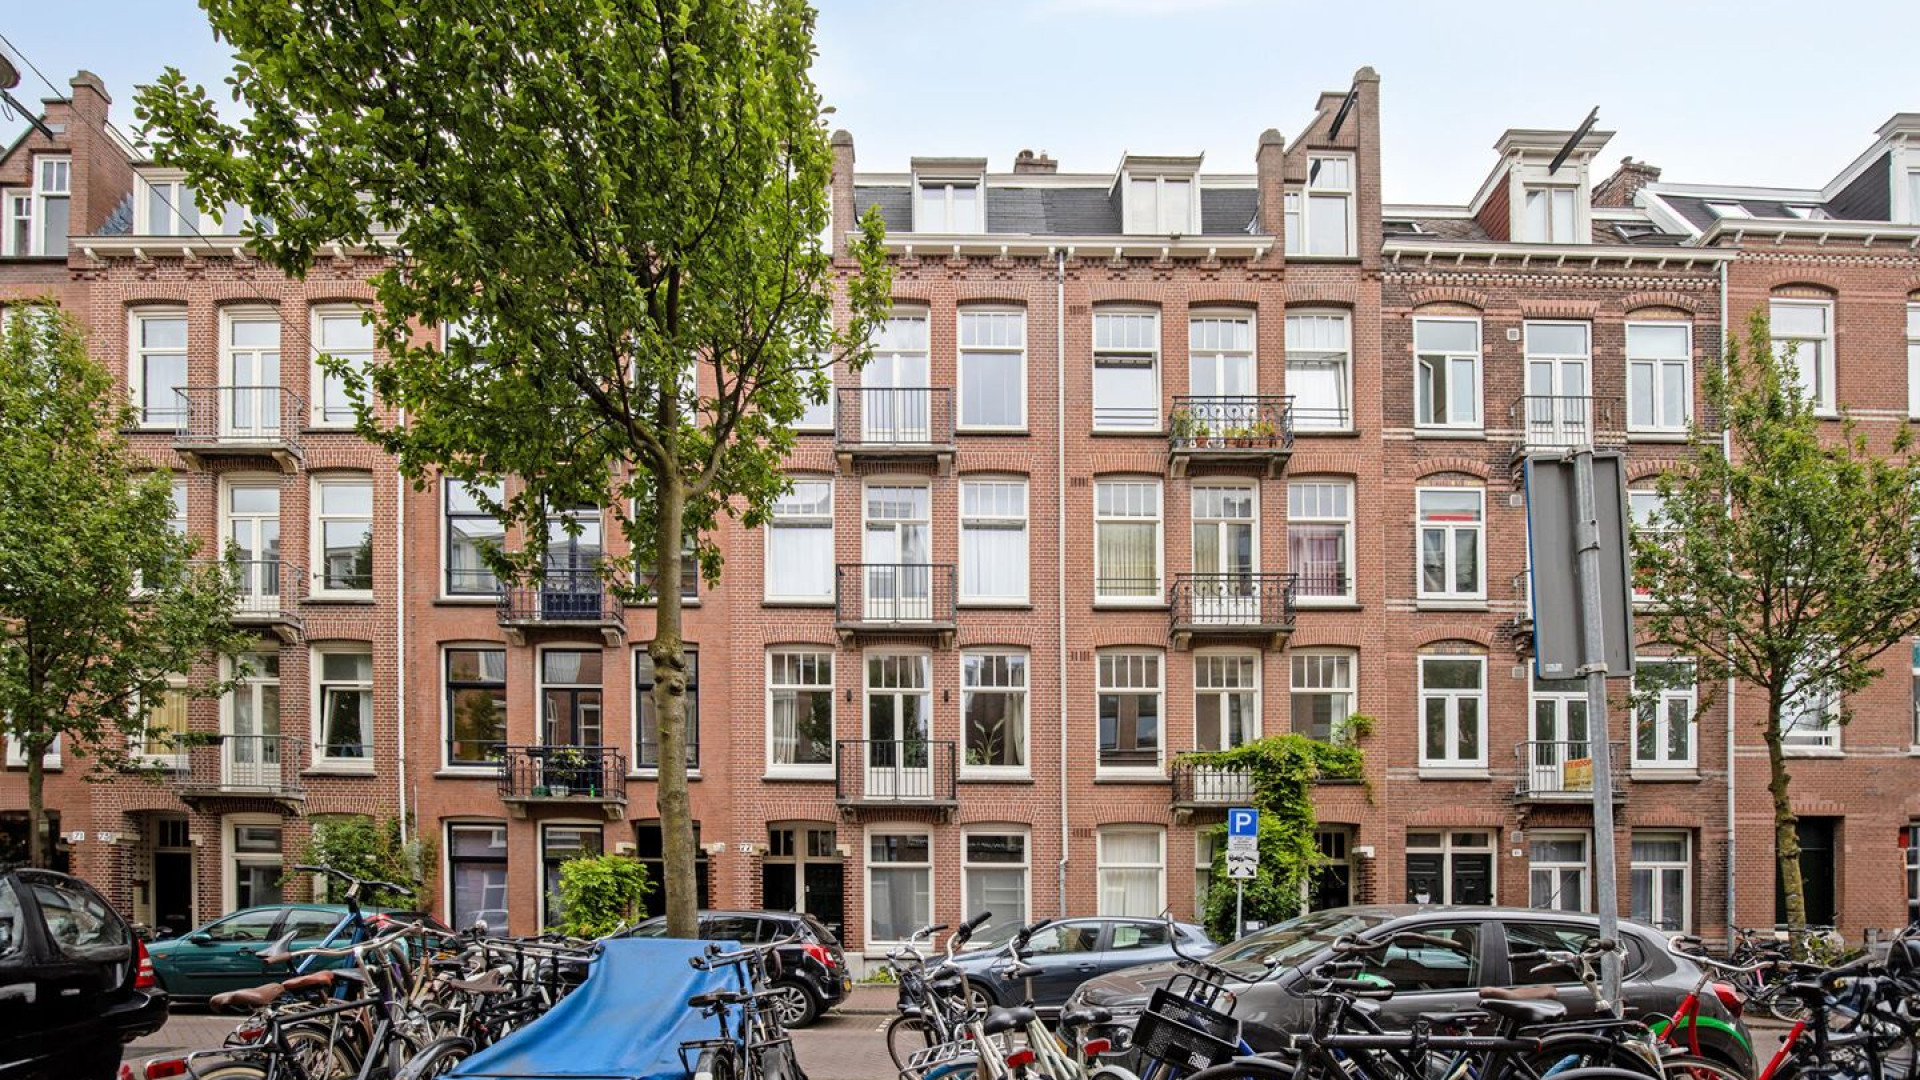 Dubbel bovenhuis Ronald Koeman in Amsterdam met vette winst verkocht!. Zie foto's 2